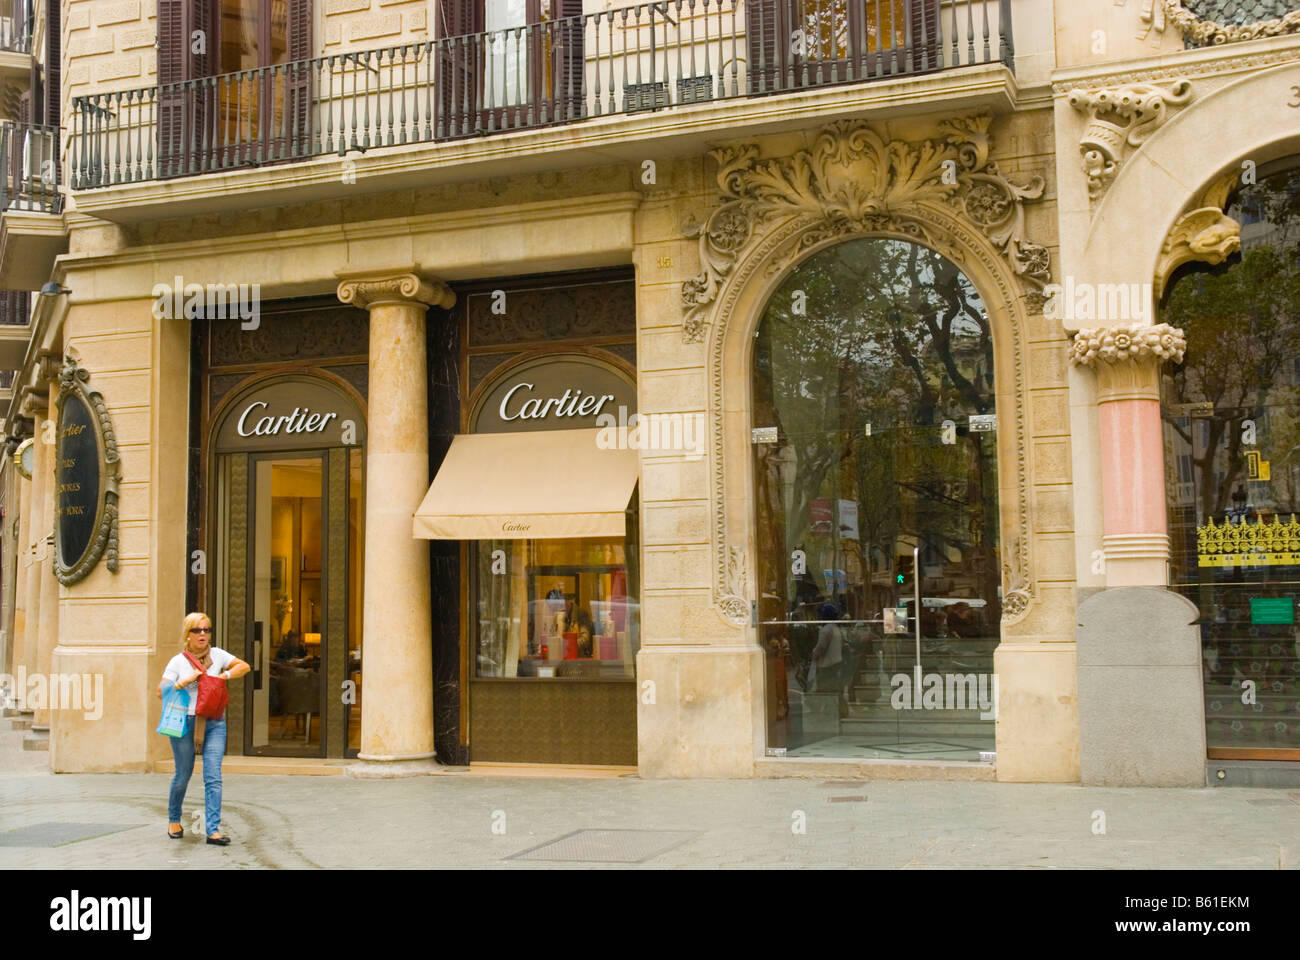 Cartier shop along Passeig de Gracia in 